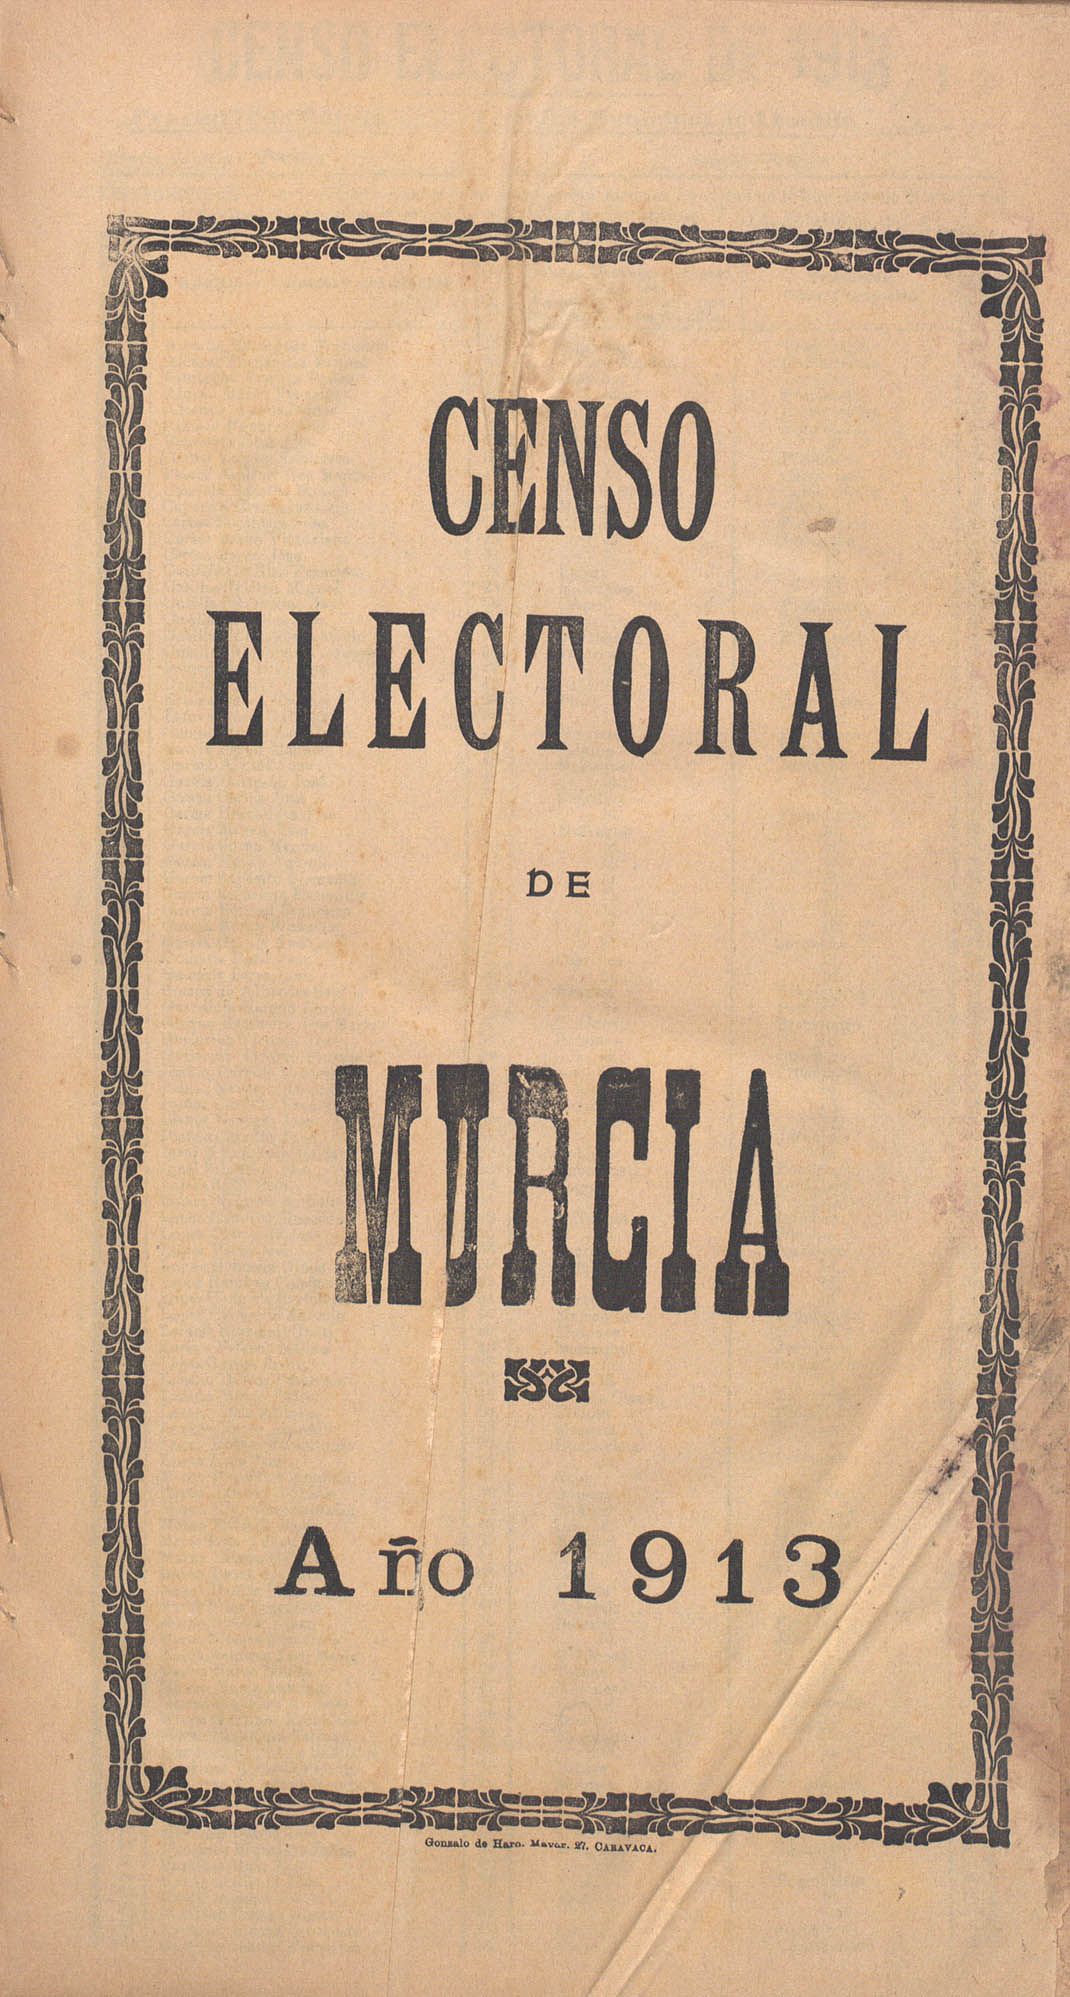 Censo electoral provincial de 1913